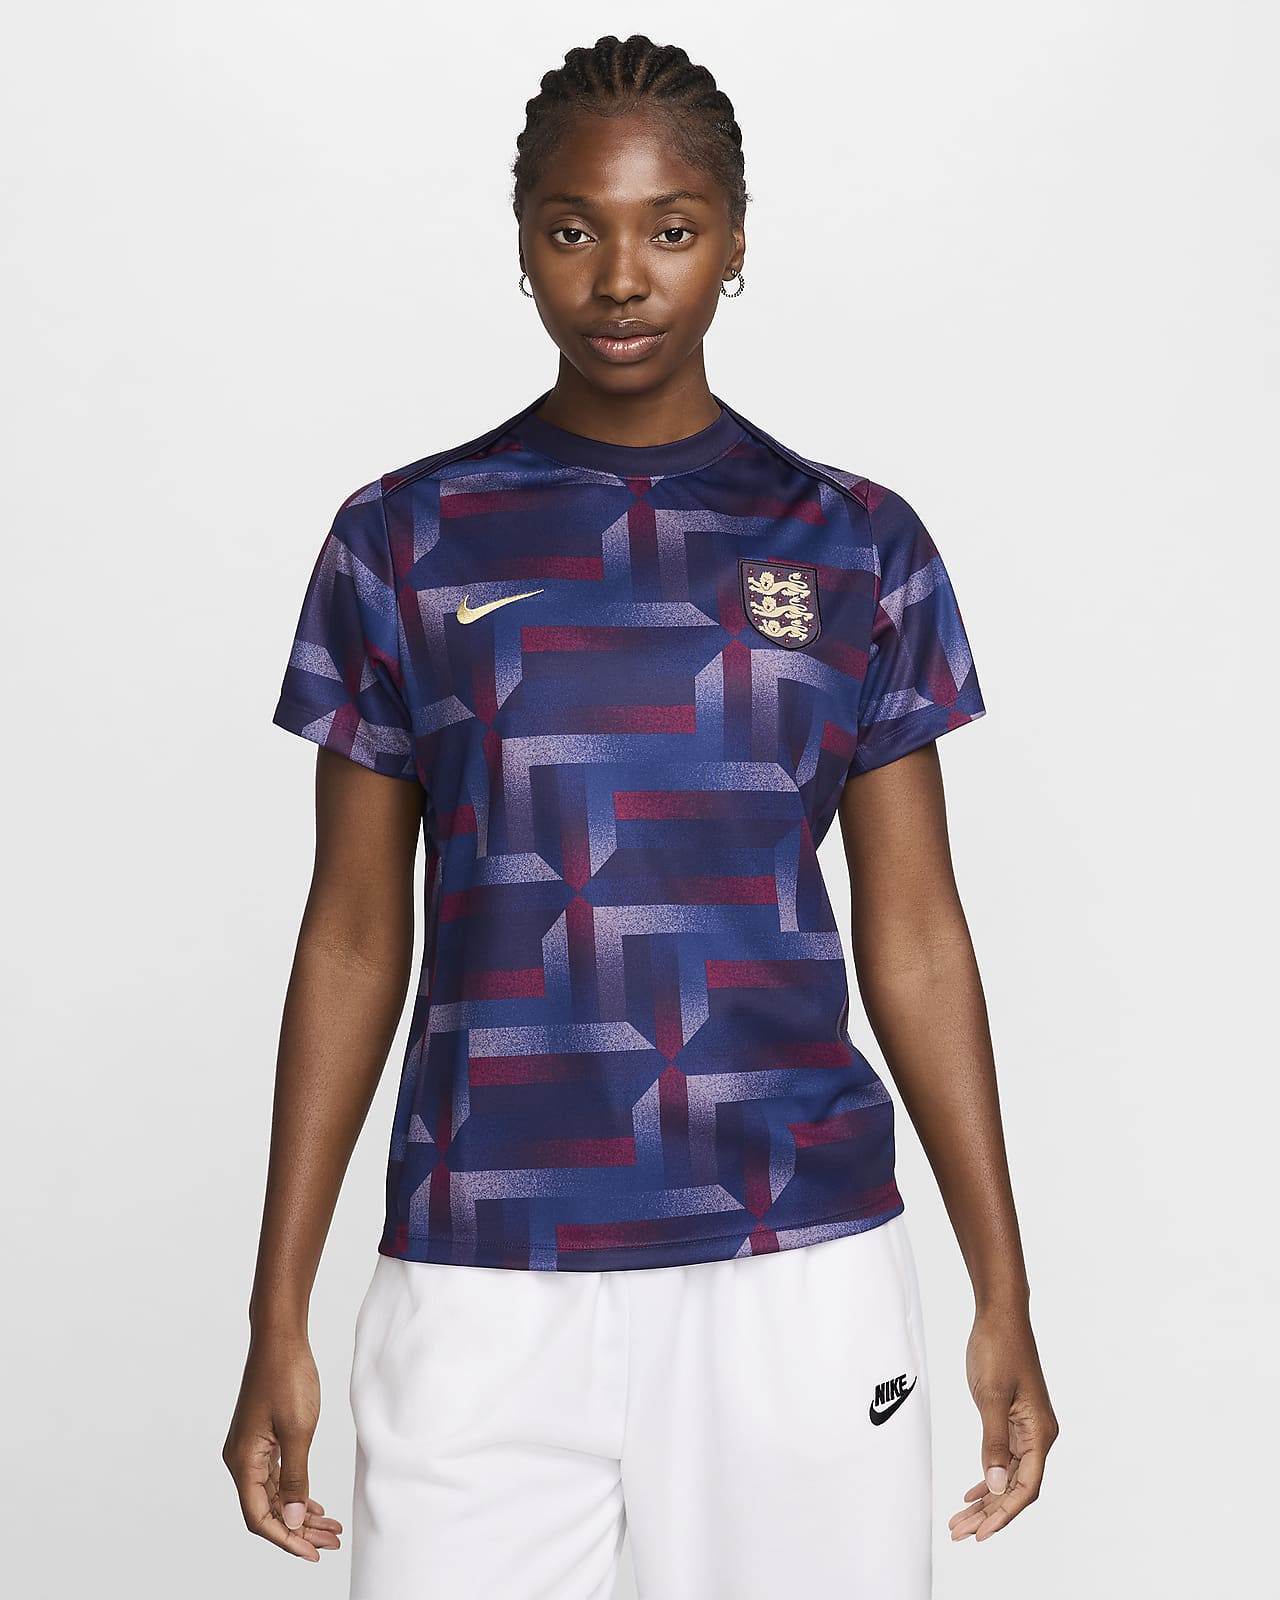 Kortärmad fotbollströja för uppvärmning England Academy Pro Nike Dri-FIT för kvinnor